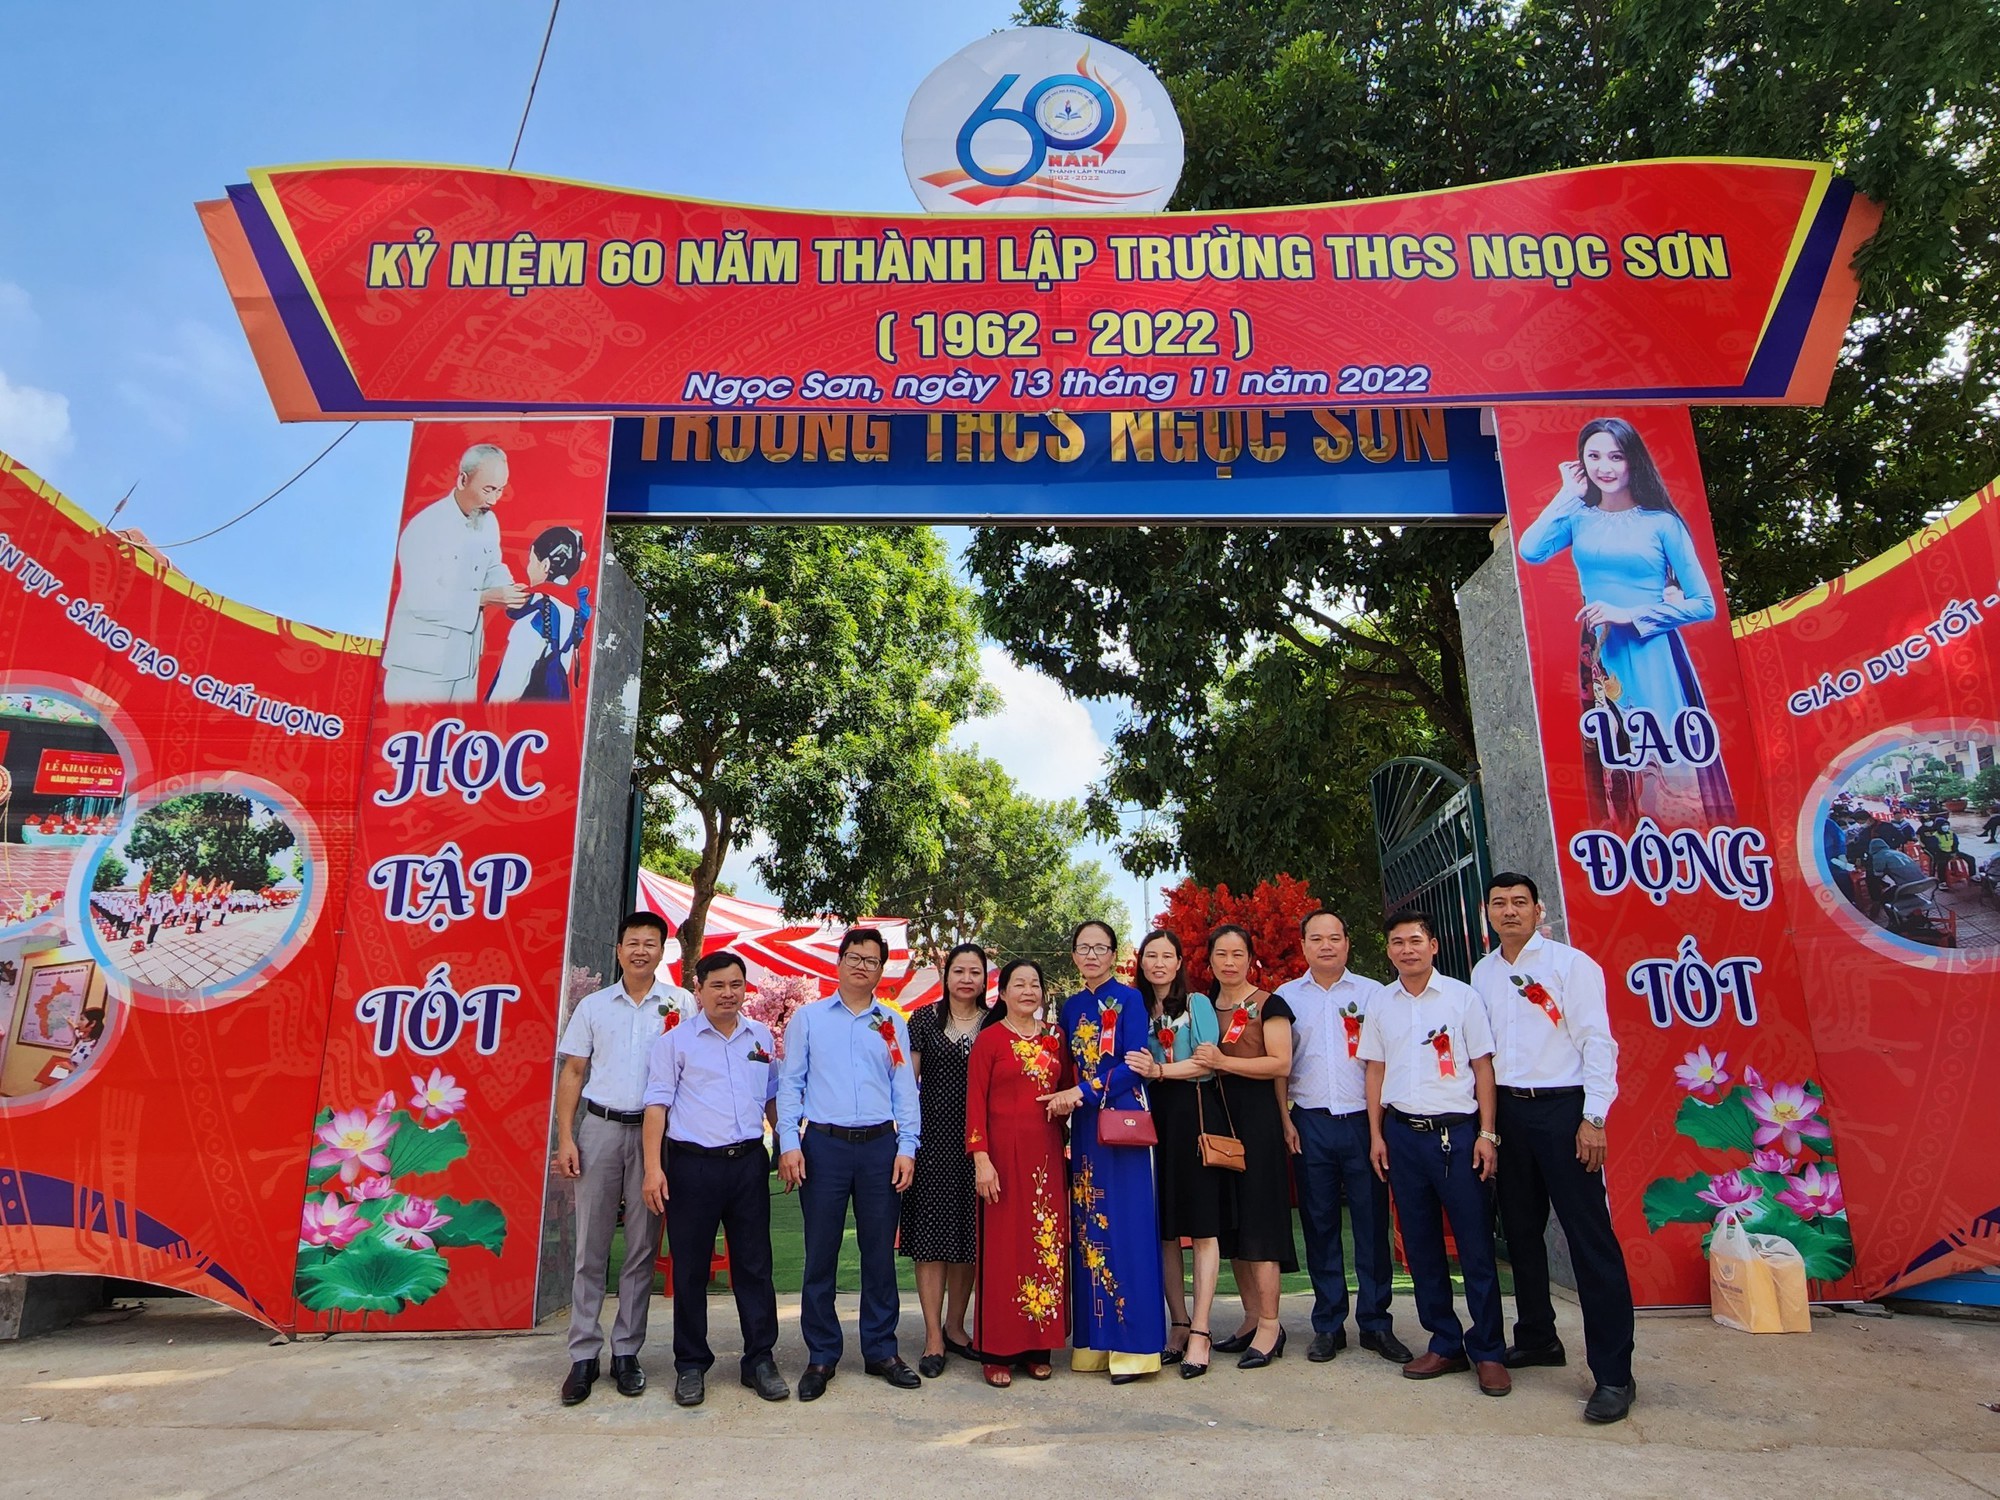 Bắc Giang: Kỷ niệm 60 năm thành lập trường THCS Ngọc Sơn - Ảnh 4.